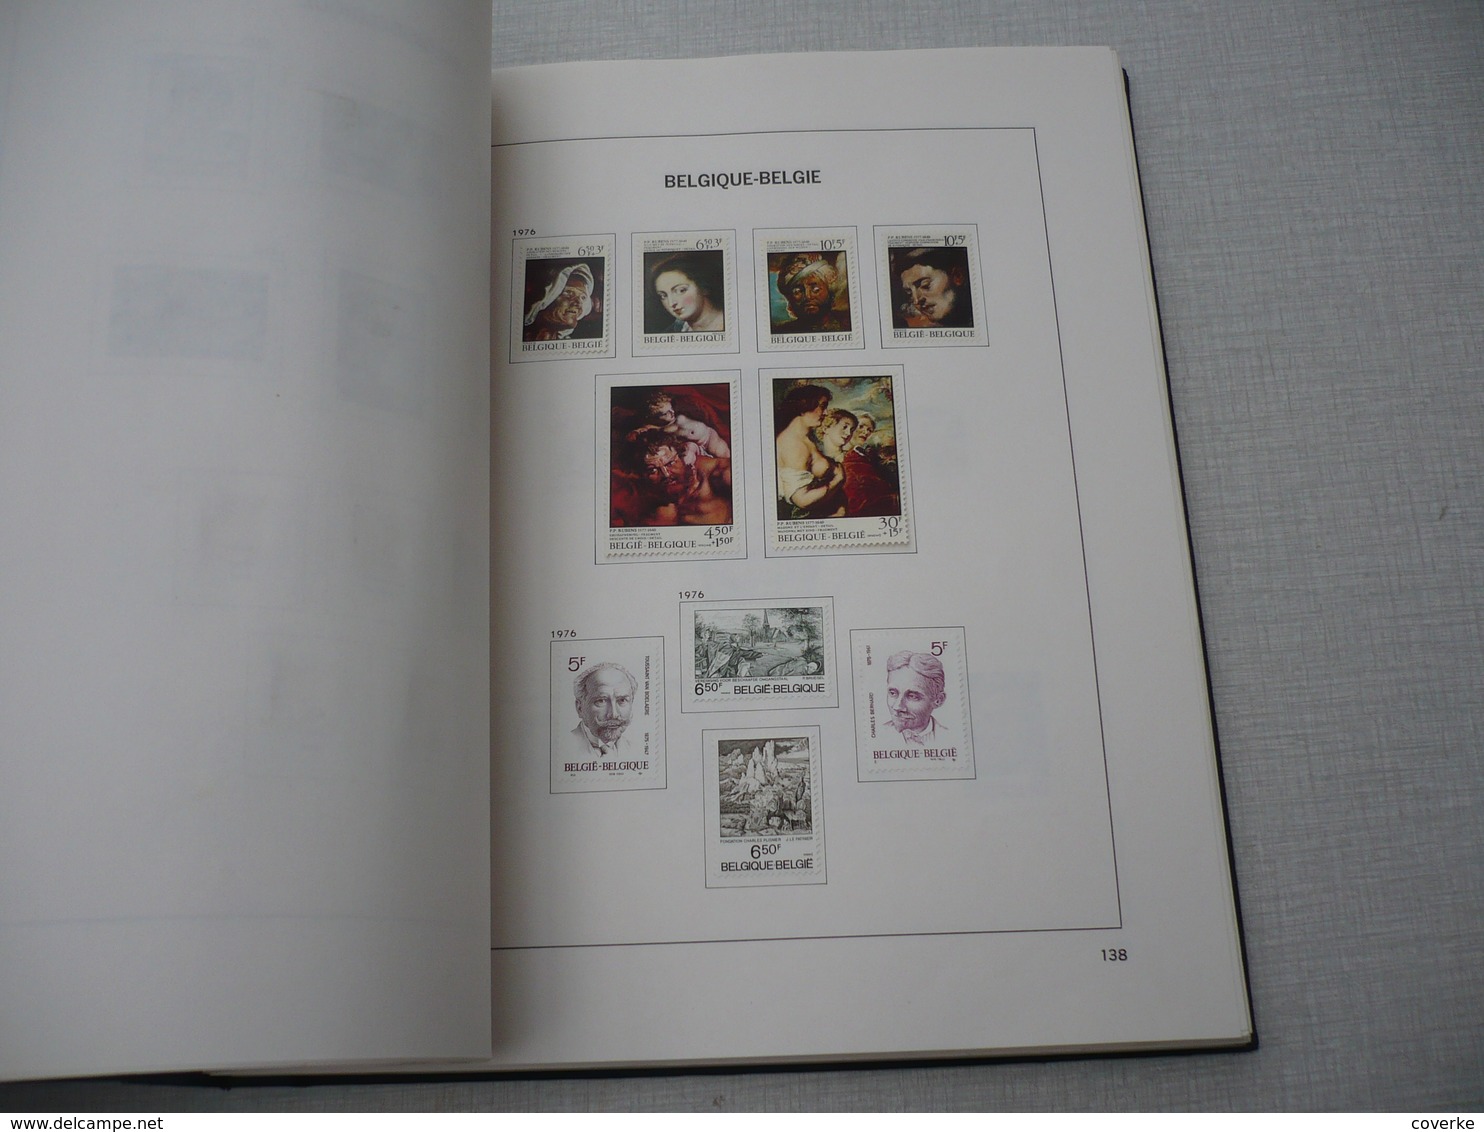 verzameling in gemengde kwaliteit zowel xx , scharnier of gestempeld , 1959 - 1982 , vniet al de fotos staan er op .